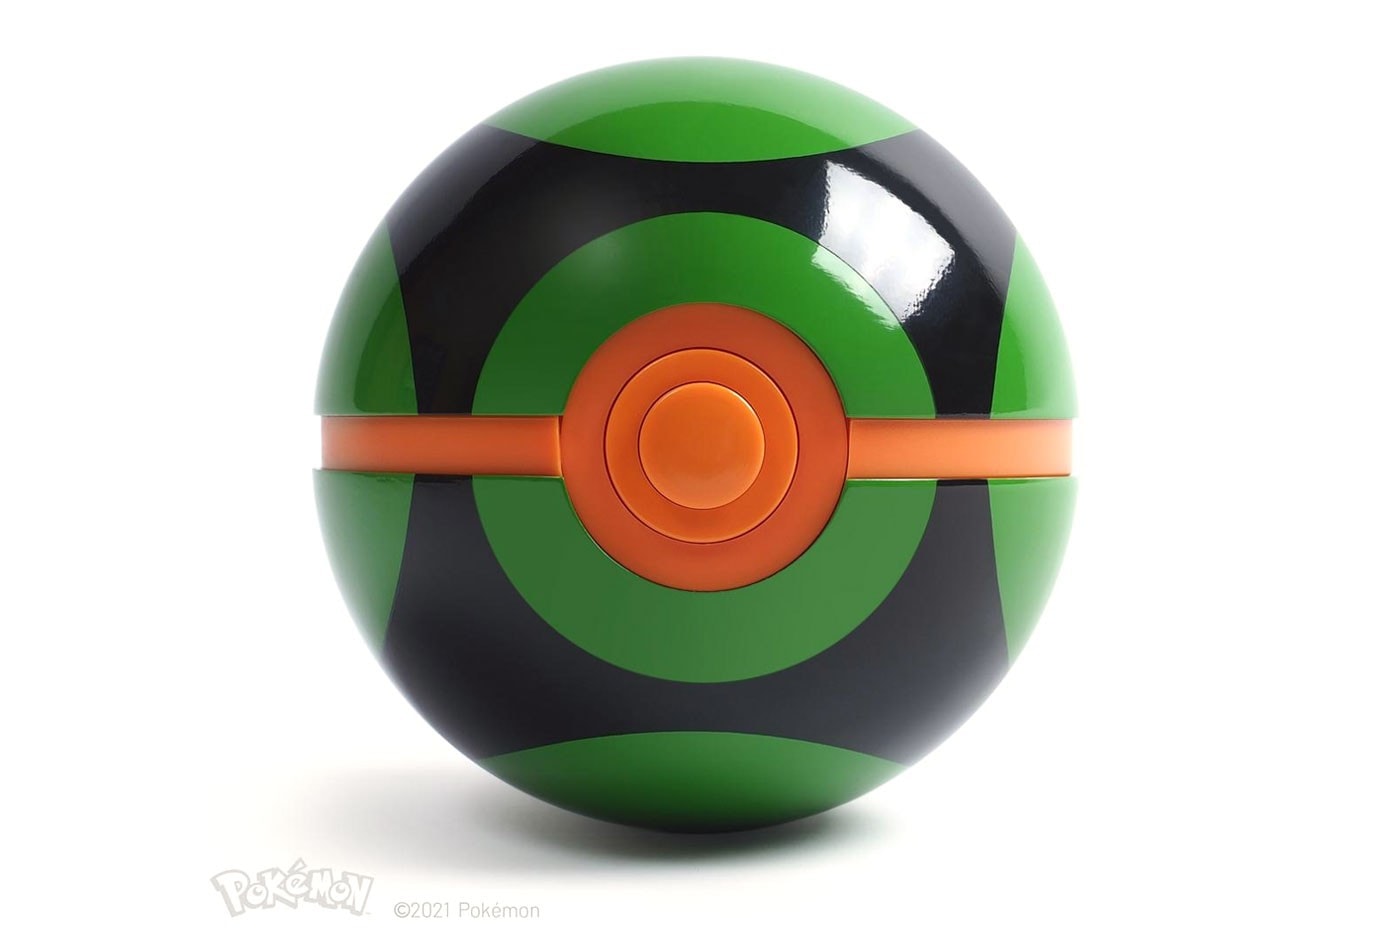 官方授權 1:1 尺寸收藏級 Dusk Ball「黑暗球」正式登場